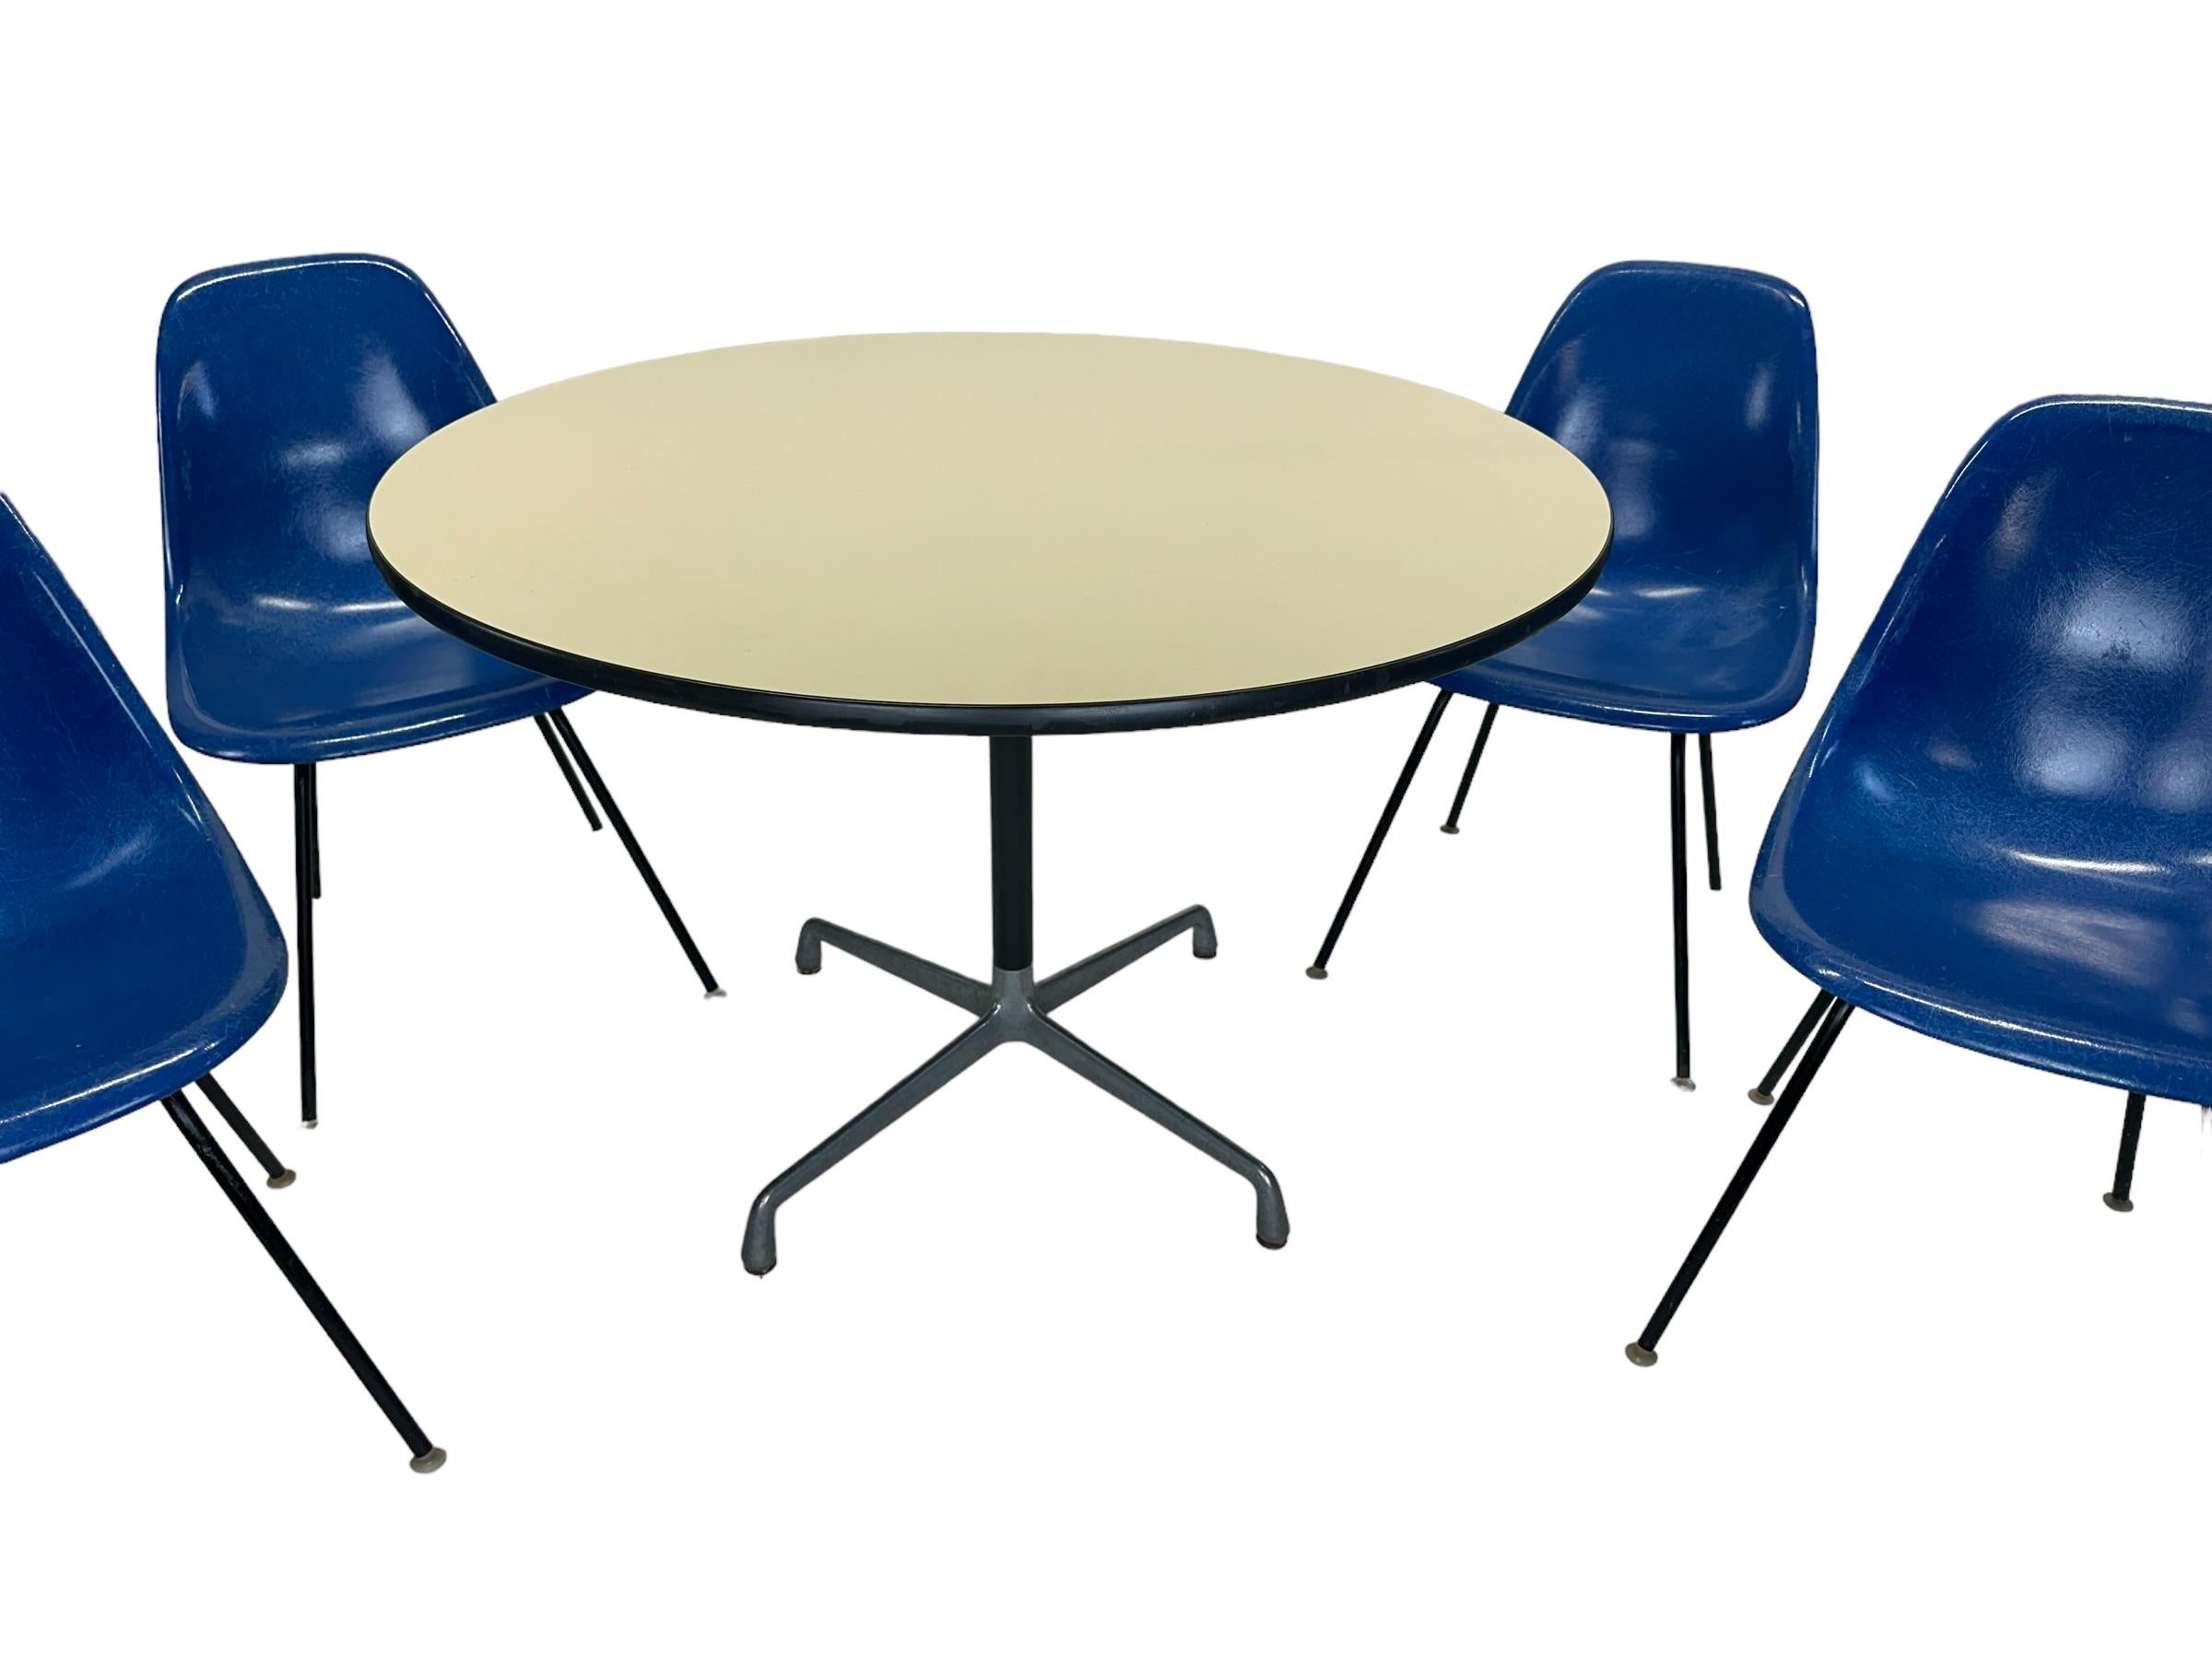 Magnifique ensemble de salle à manger vintage Herman Miller Eames. Table ronde de 48 pouces de diamètre et quatre chaises assorties en fibre de verre. La table et les chaises sont toutes signées et garanties authentiques par Herman Miller. Les